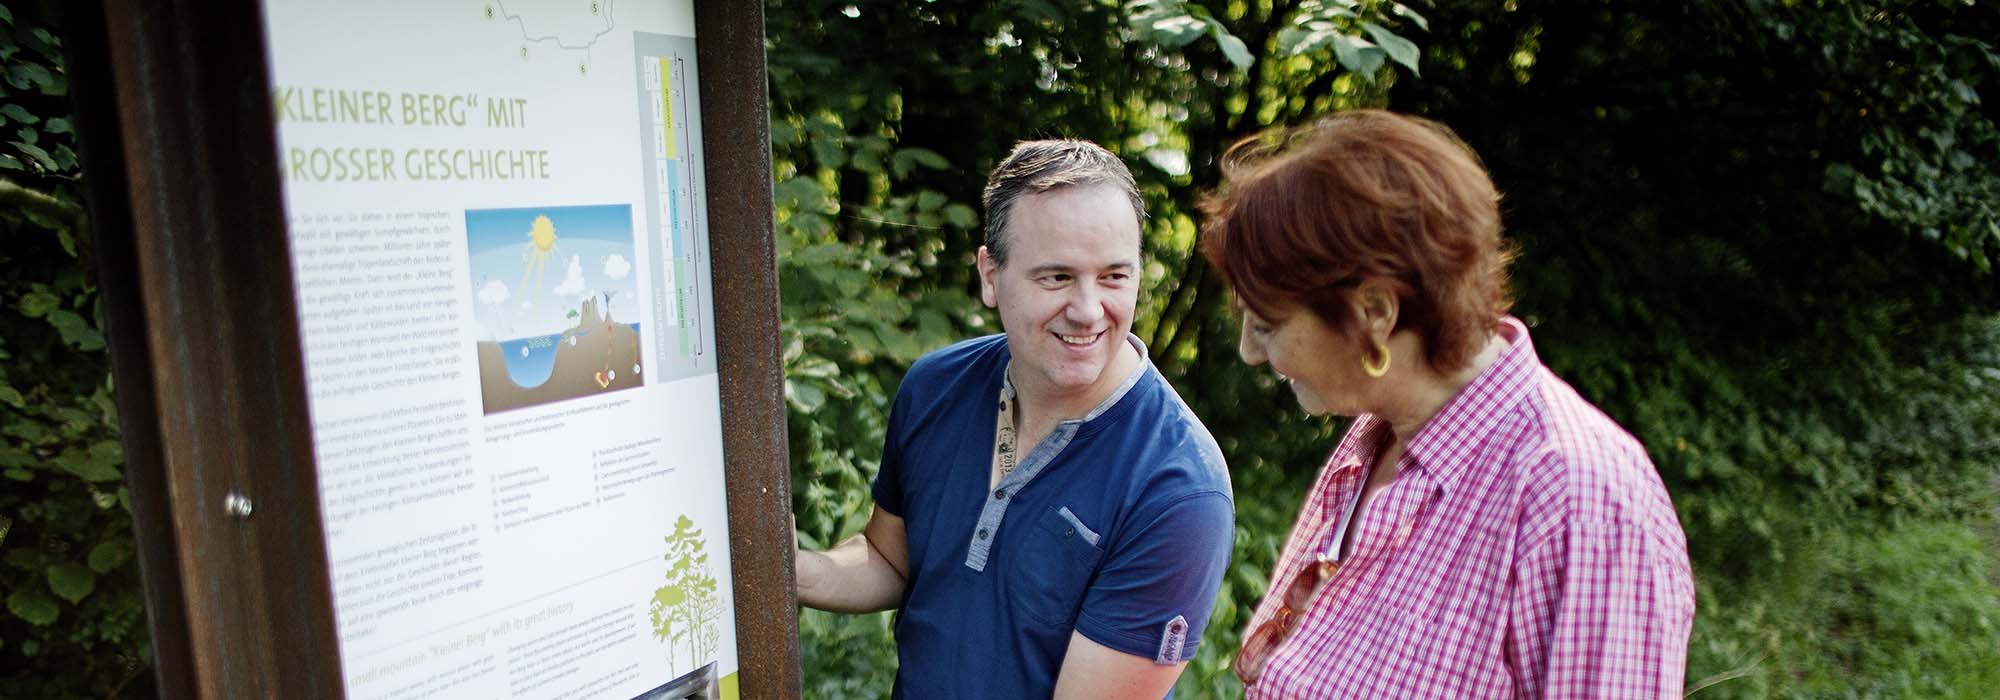 Ein Mann und eine Frau stehen vor einer Informationstafel im Grünen